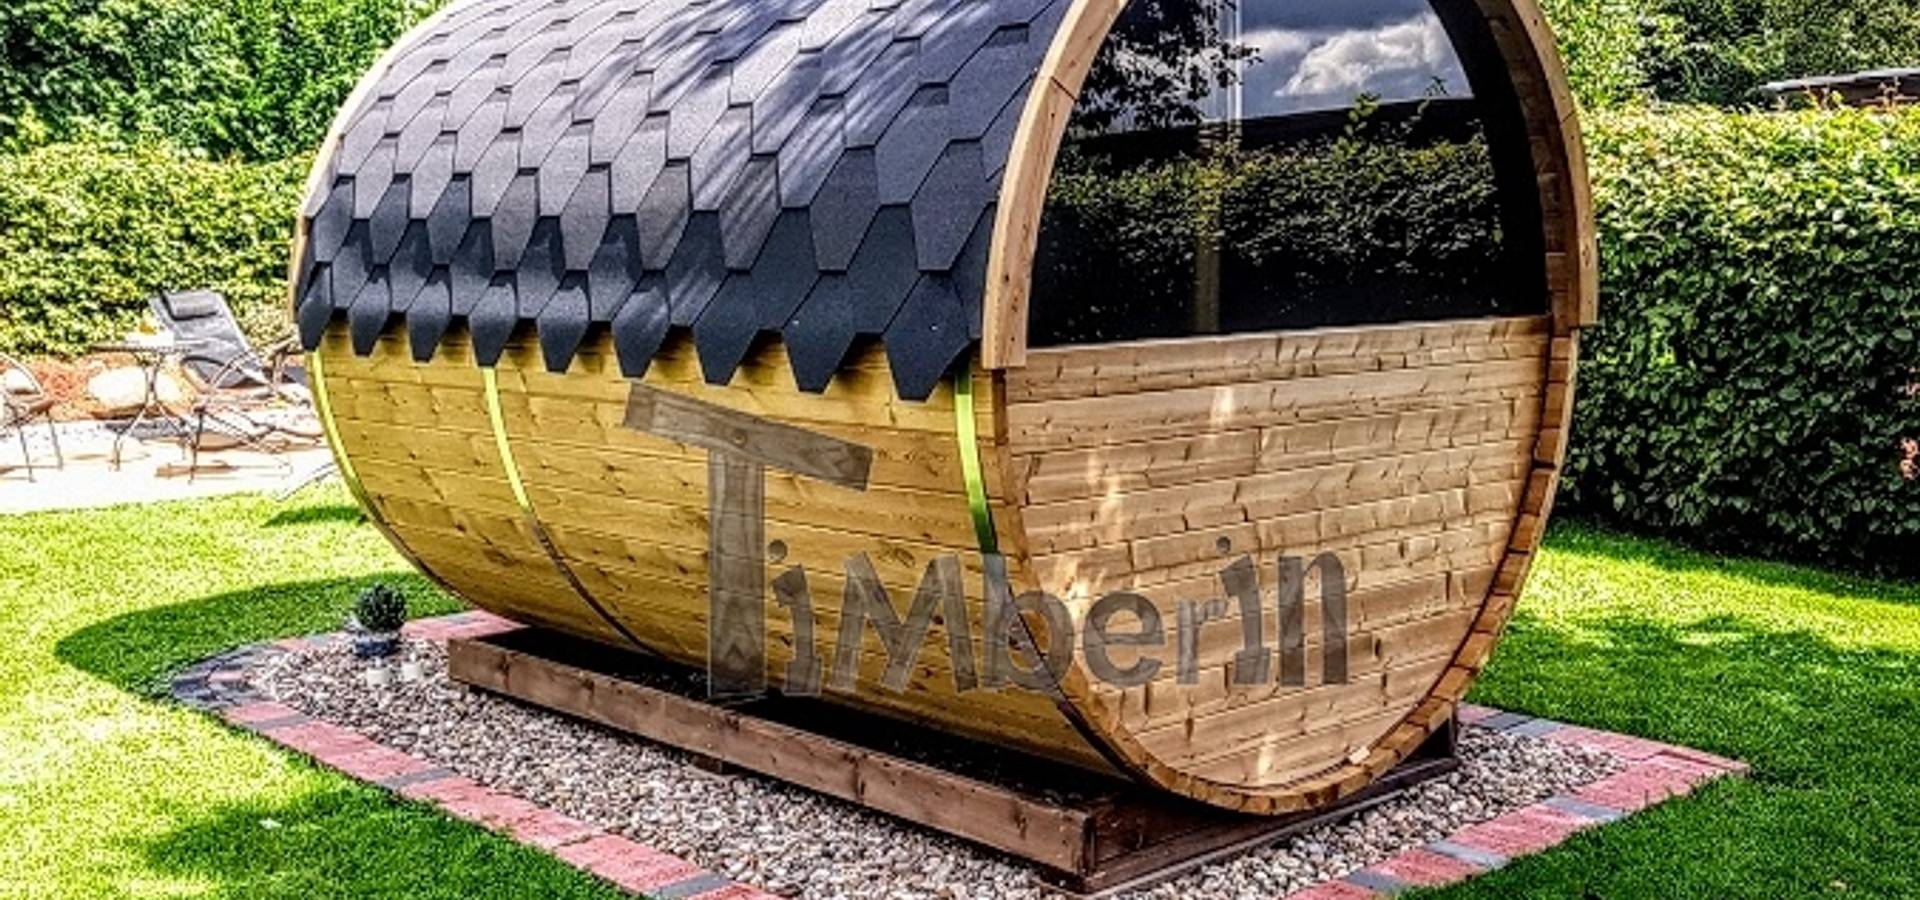 TimberIN hot tubs—outdoor saunas